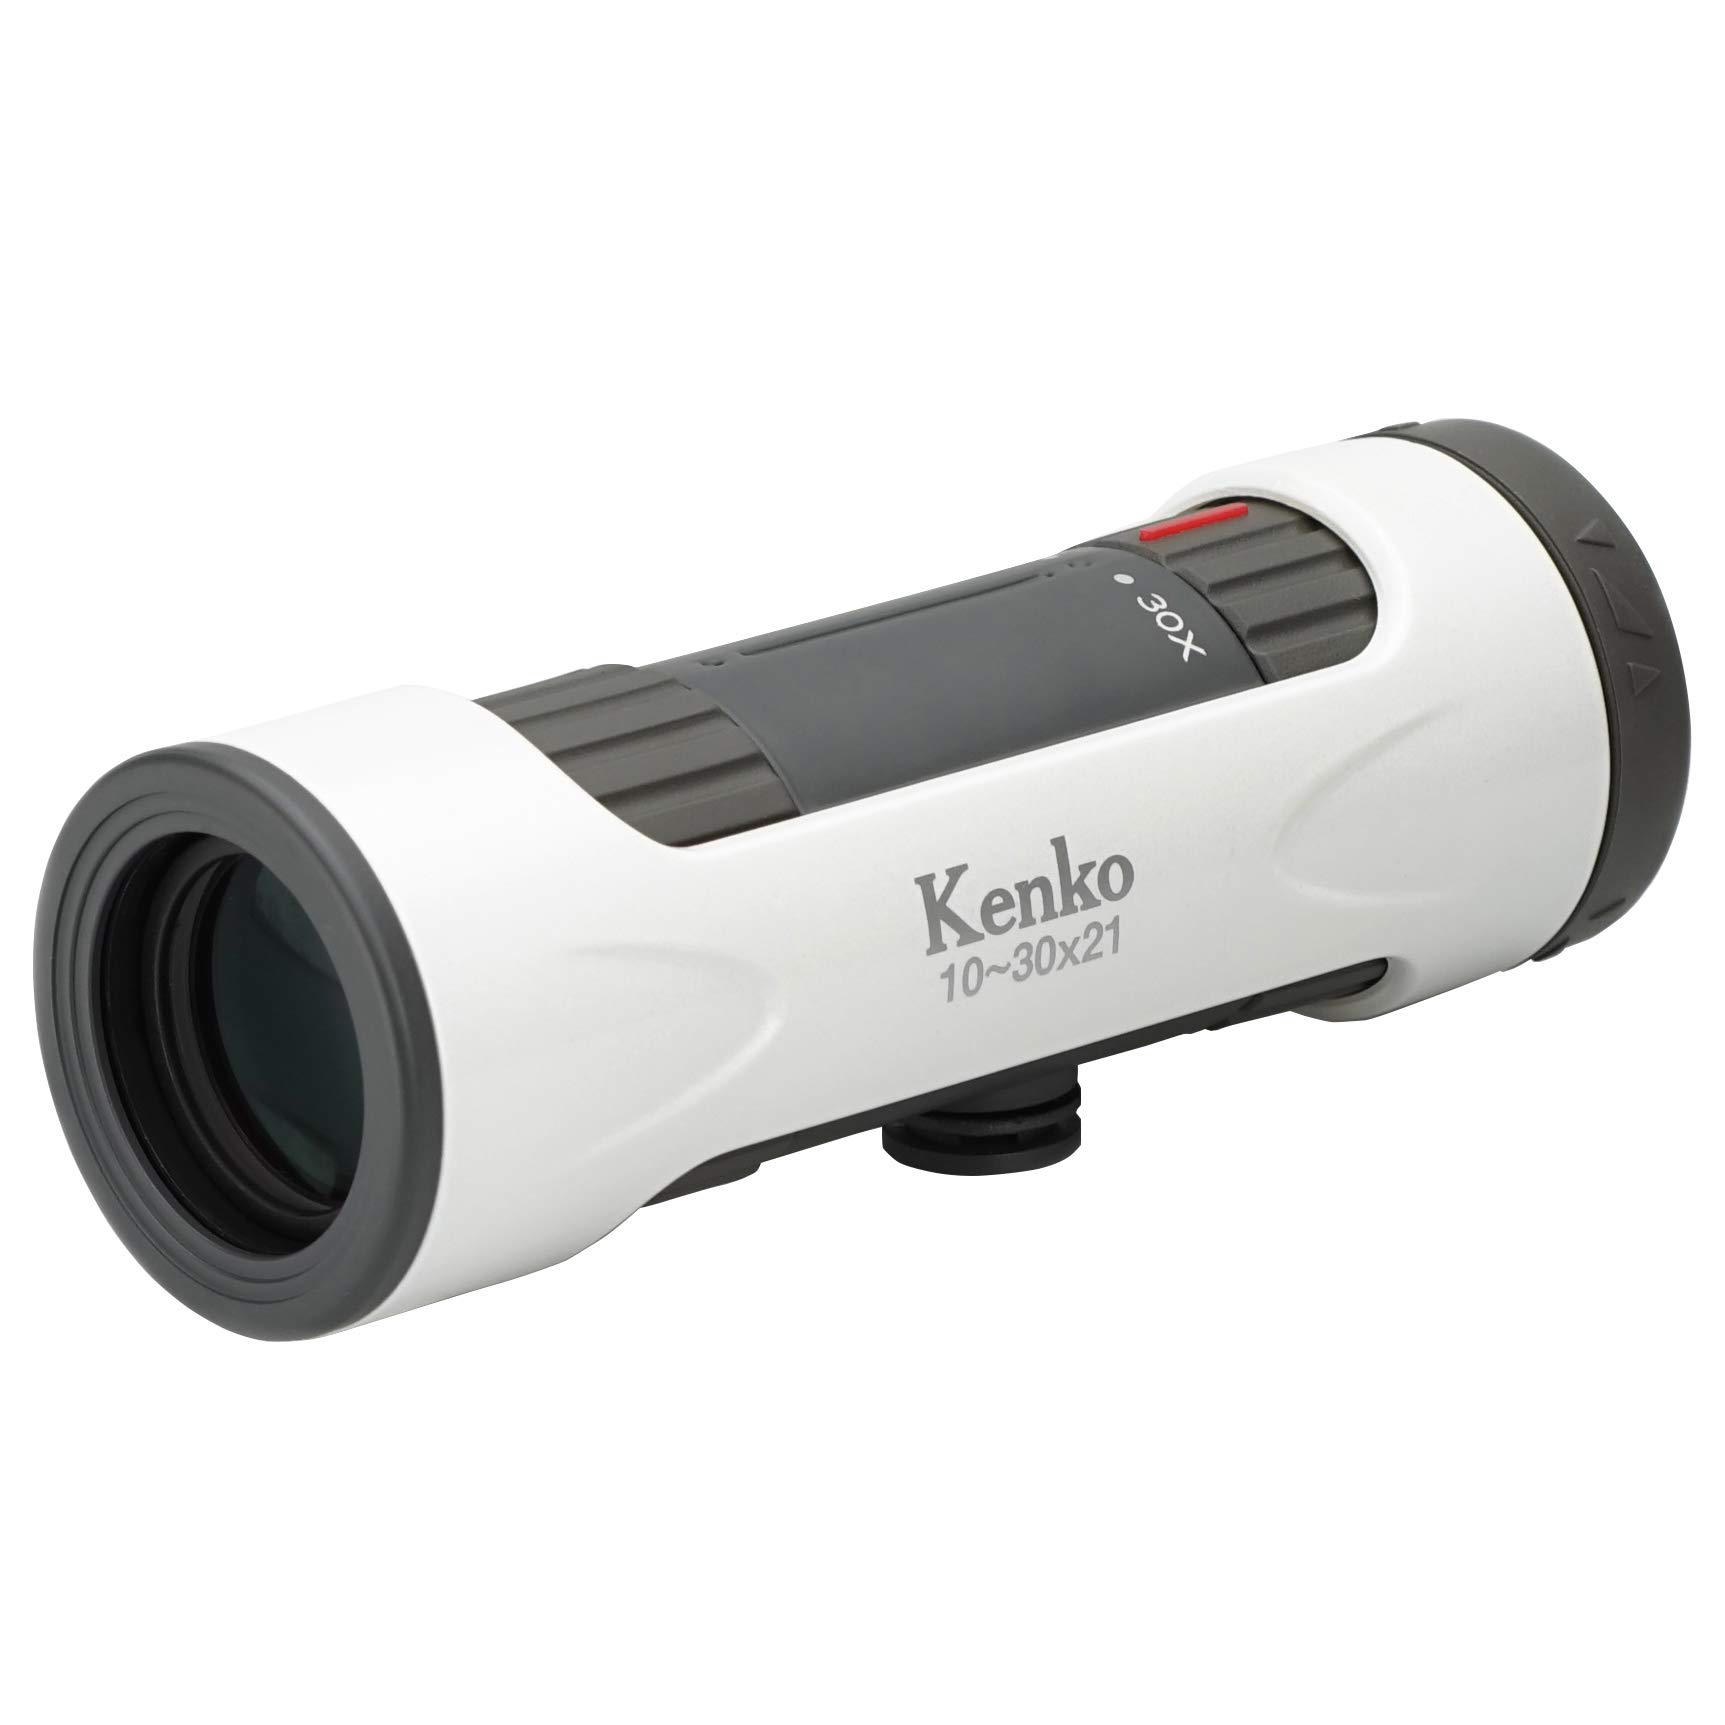 Kenko 単眼鏡 ウルトラビューI 10~30×21 10~30倍 21mm口径 ズーム式 ホワイト 429068